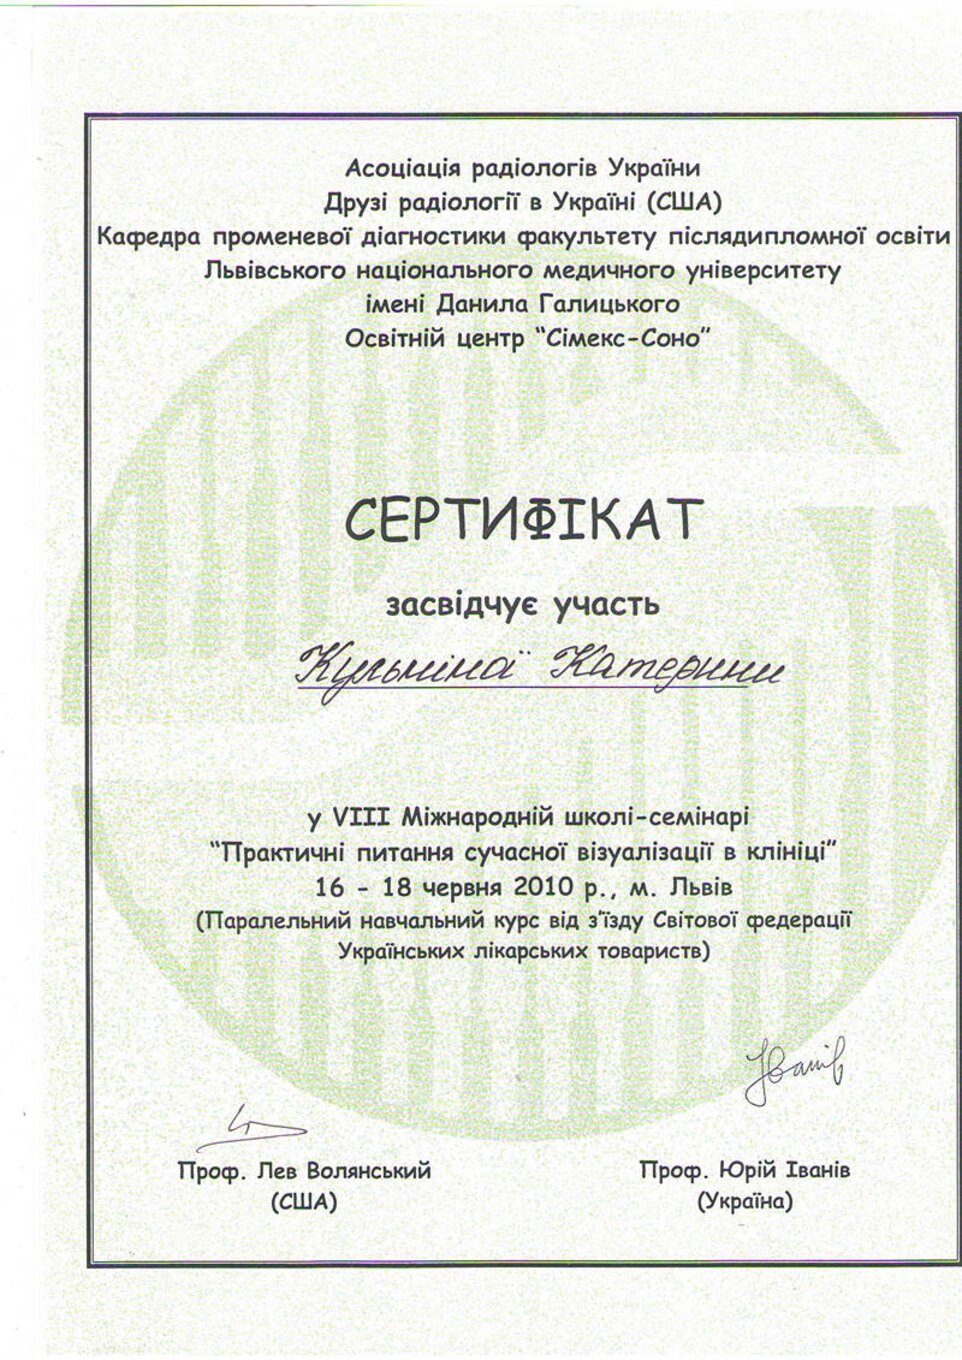 certificates/kulpina-katerina-oleksandrivna/hemomedika-cert-kulpina-2010-l-vov-8ya_shkola.jpg